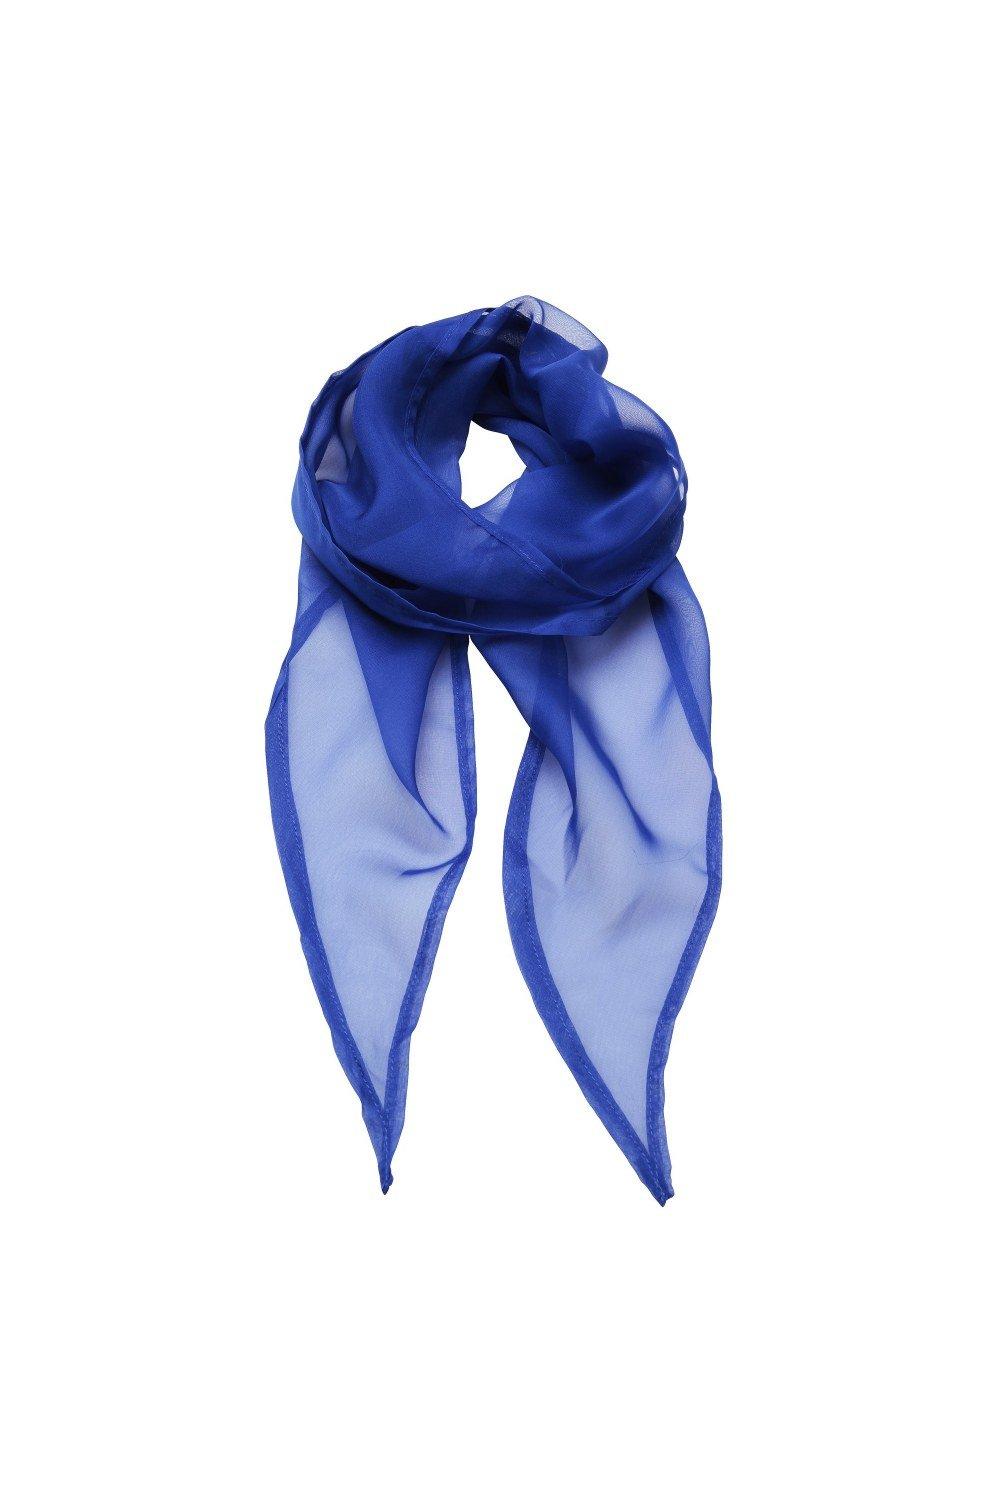 Деловой шифоновый деловой шарф Premier, синий шифоновый радужный цветной шарф женский шарф arn танцевальный шелковый шарф большой размер